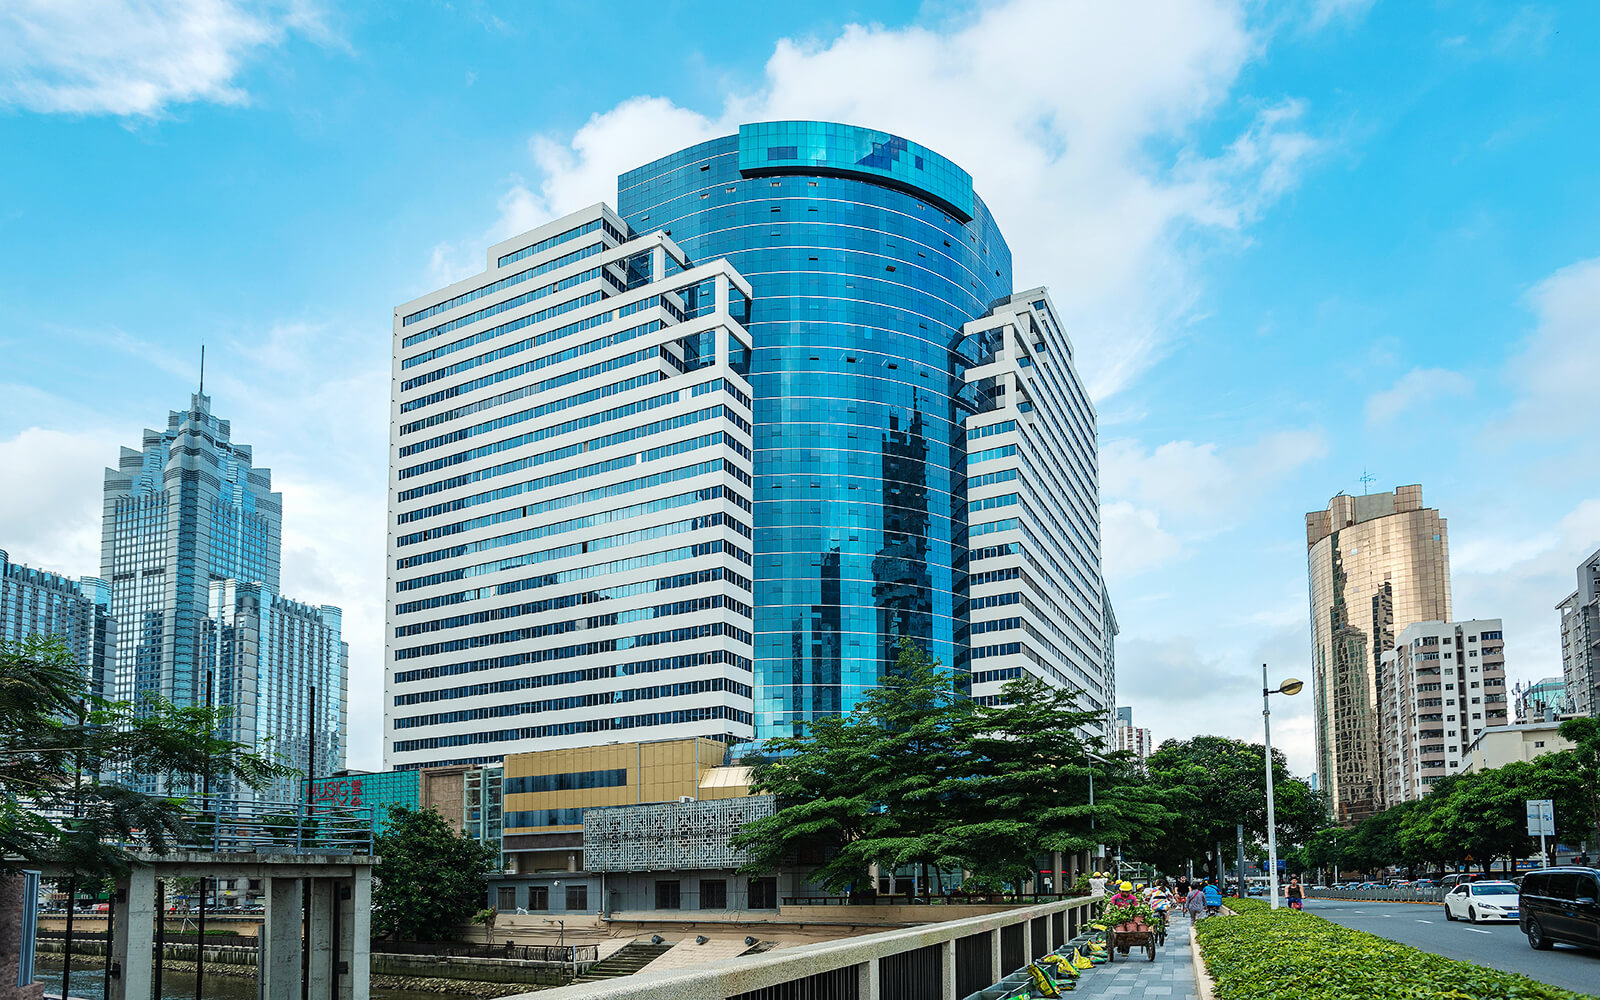 太平洋商贸大厦太平洋商贸大厦项目由华业发展(深圳)有限公司投资开发